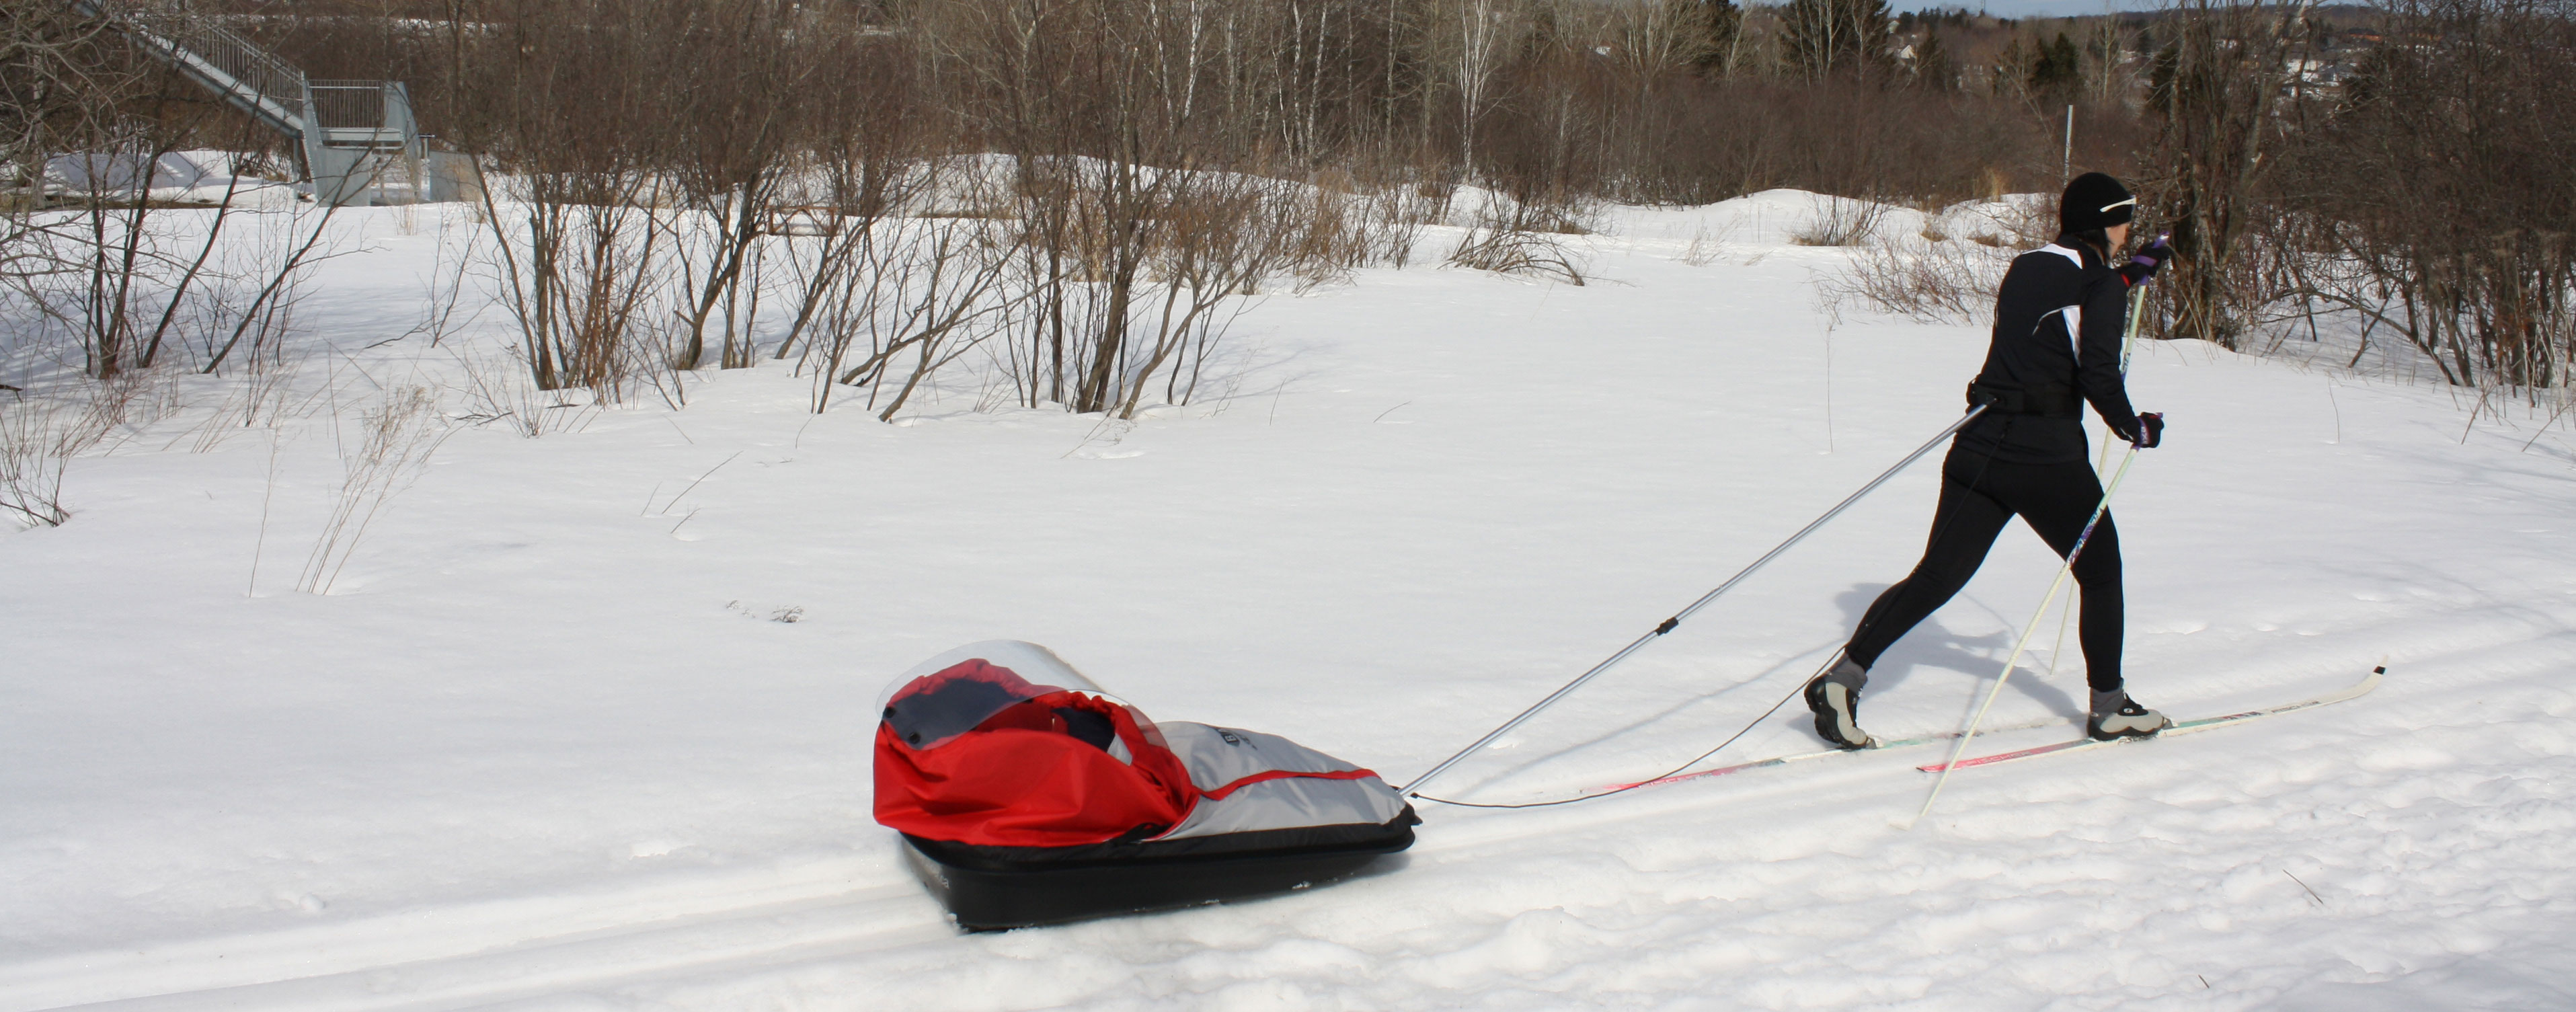 Baby Glider- Traineau de ski de fond - pulka pour jeune enfant